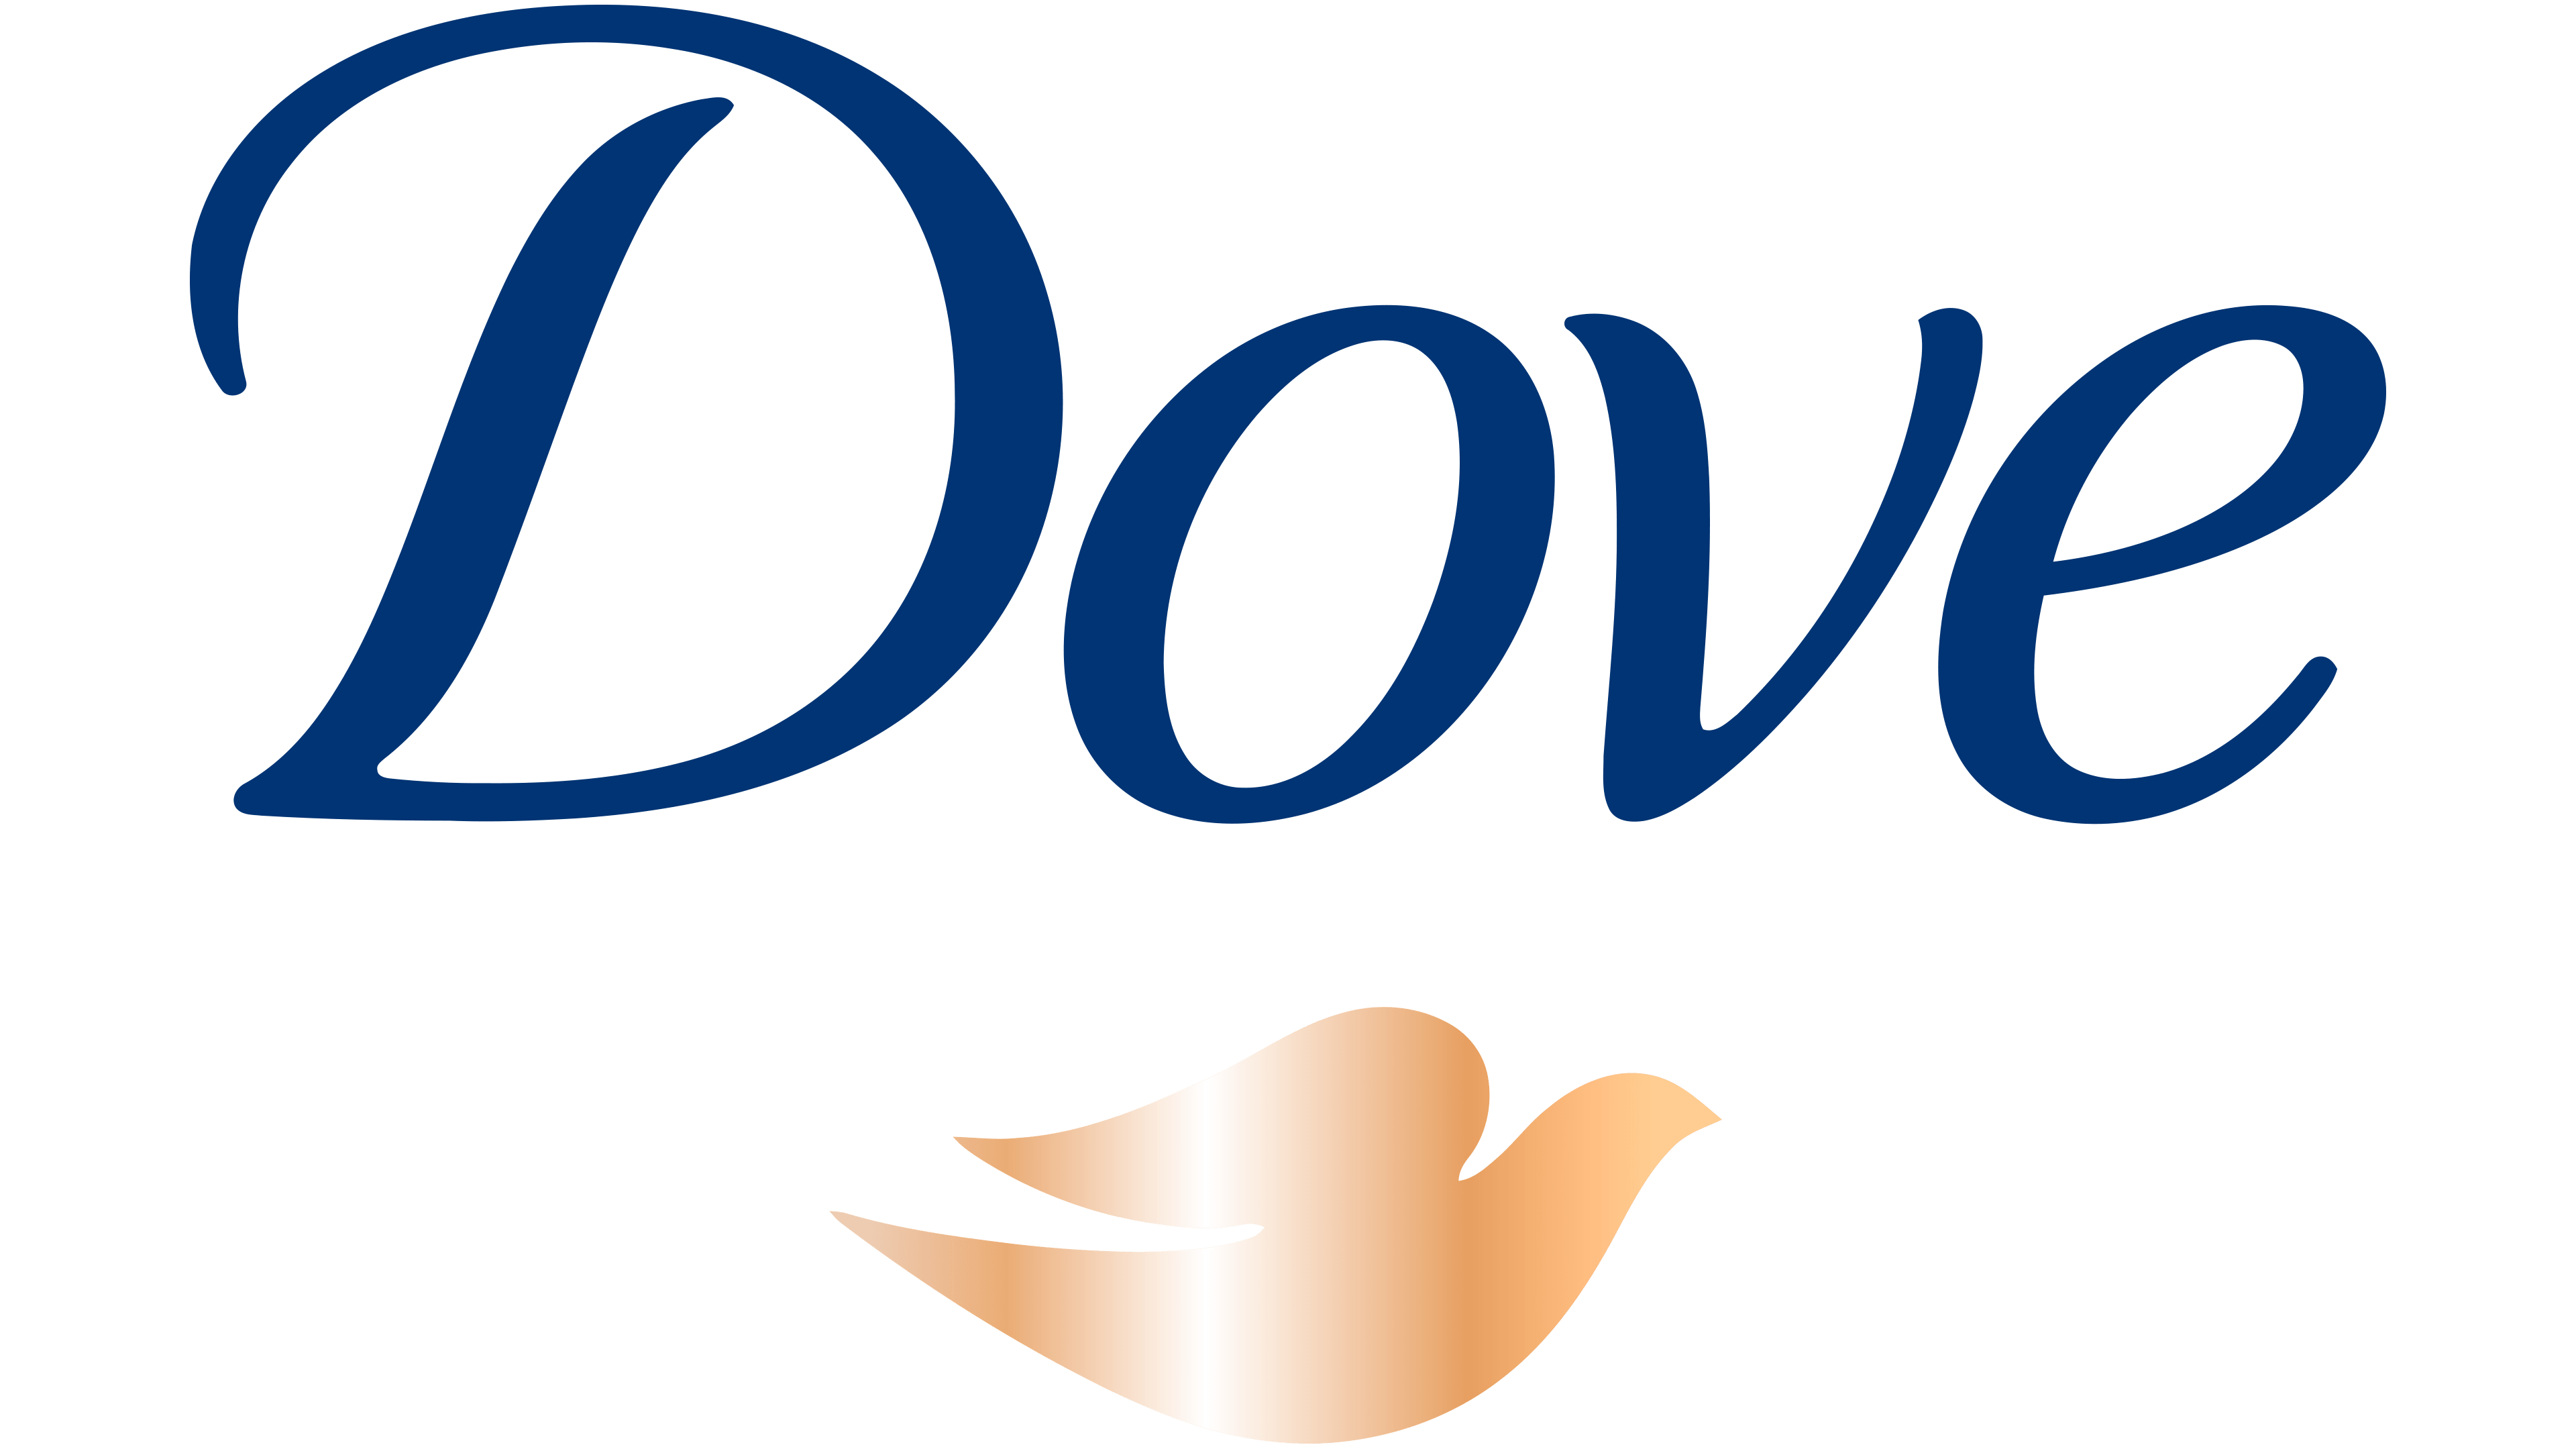 dove bird logo